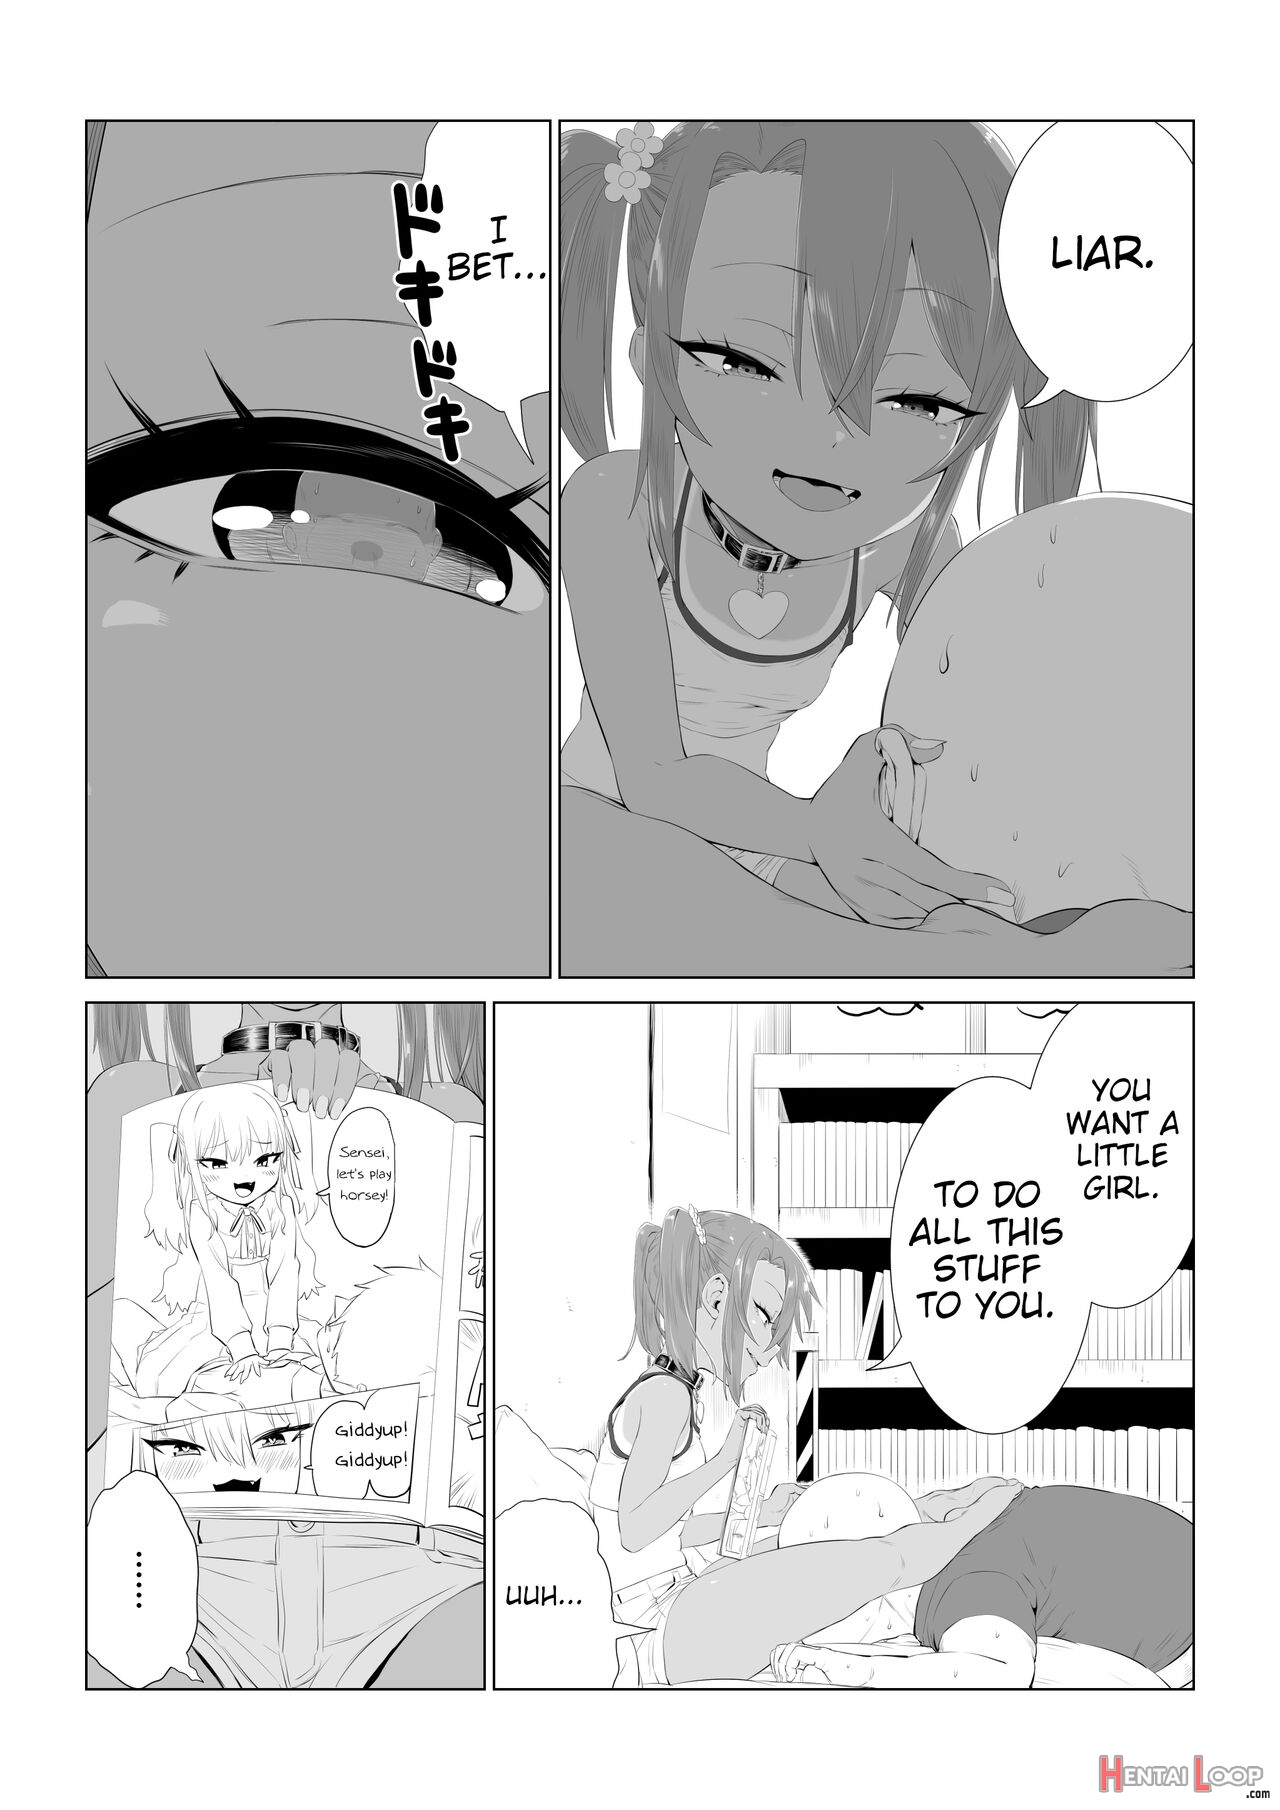 Yuma-chan's Worries page 4